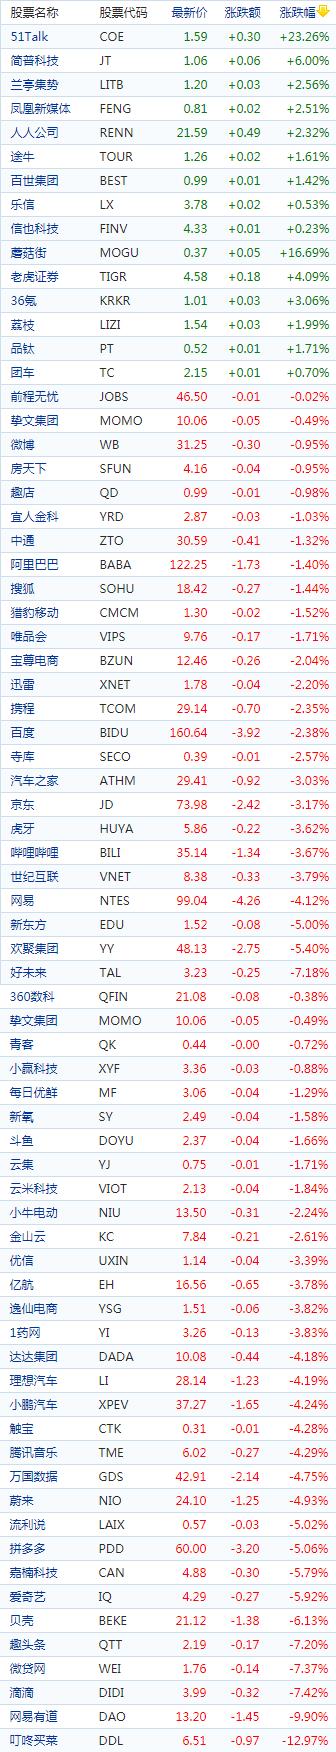 中国概念股周五收盘多数下跌新能源车股走低51Talk涨超23％